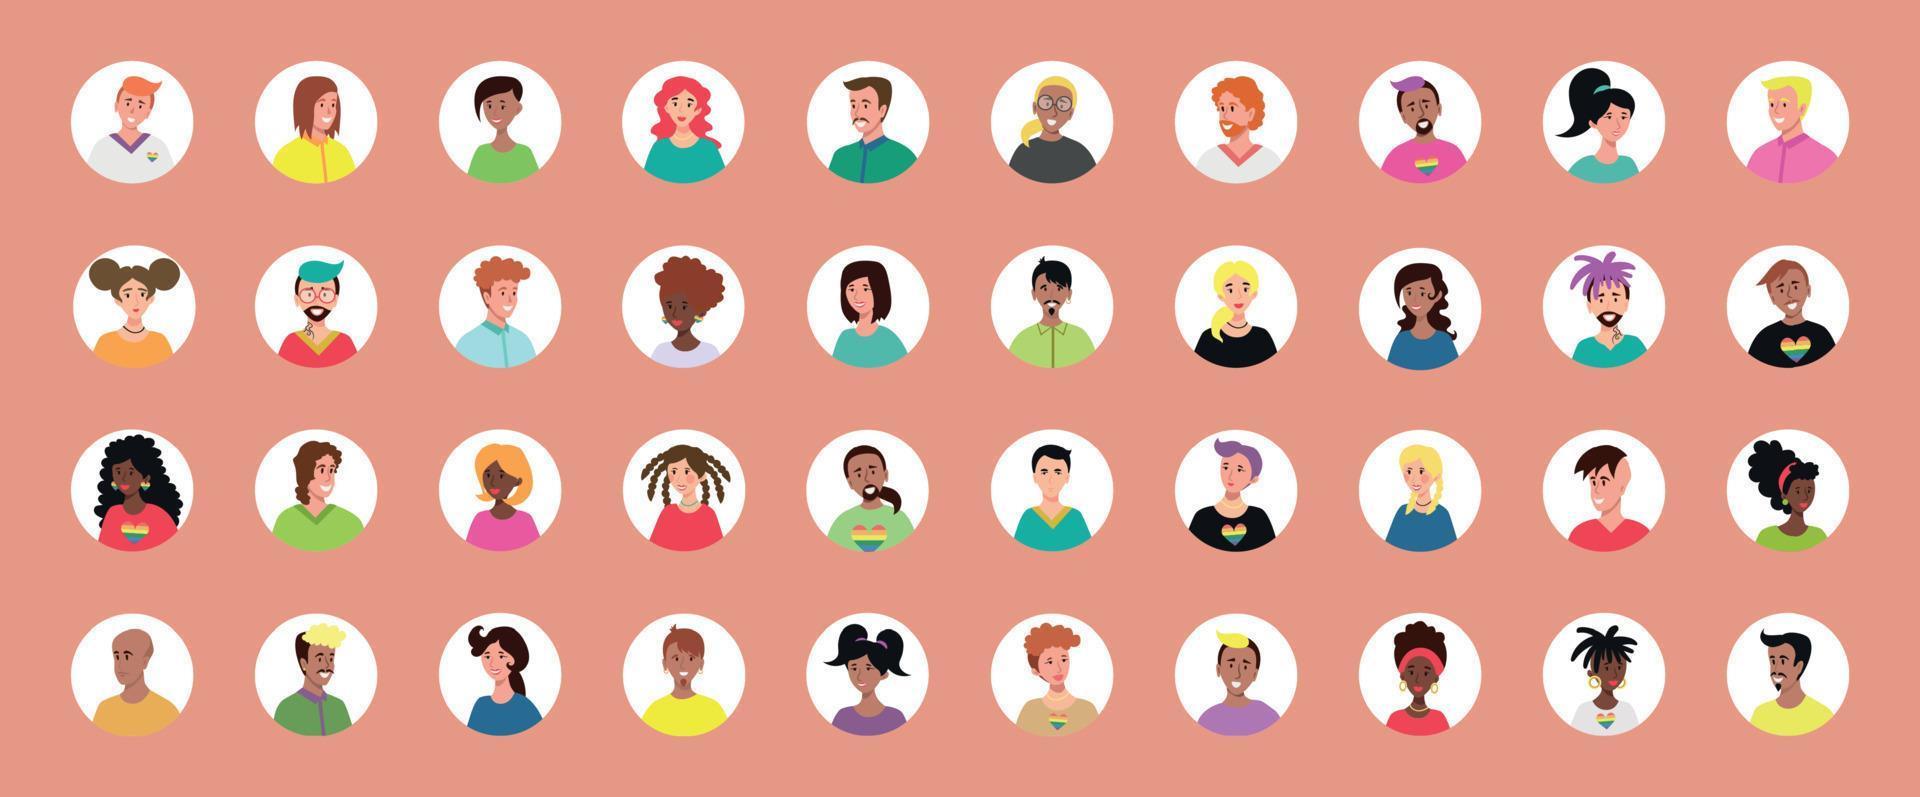 uppsättning av 40 inringade avatarer med ansikten på unga människor. bild av olika raser och nationaliteter, kvinnor och män. uppsättning användarprofilikoner. runda märken med glada människor - vektor